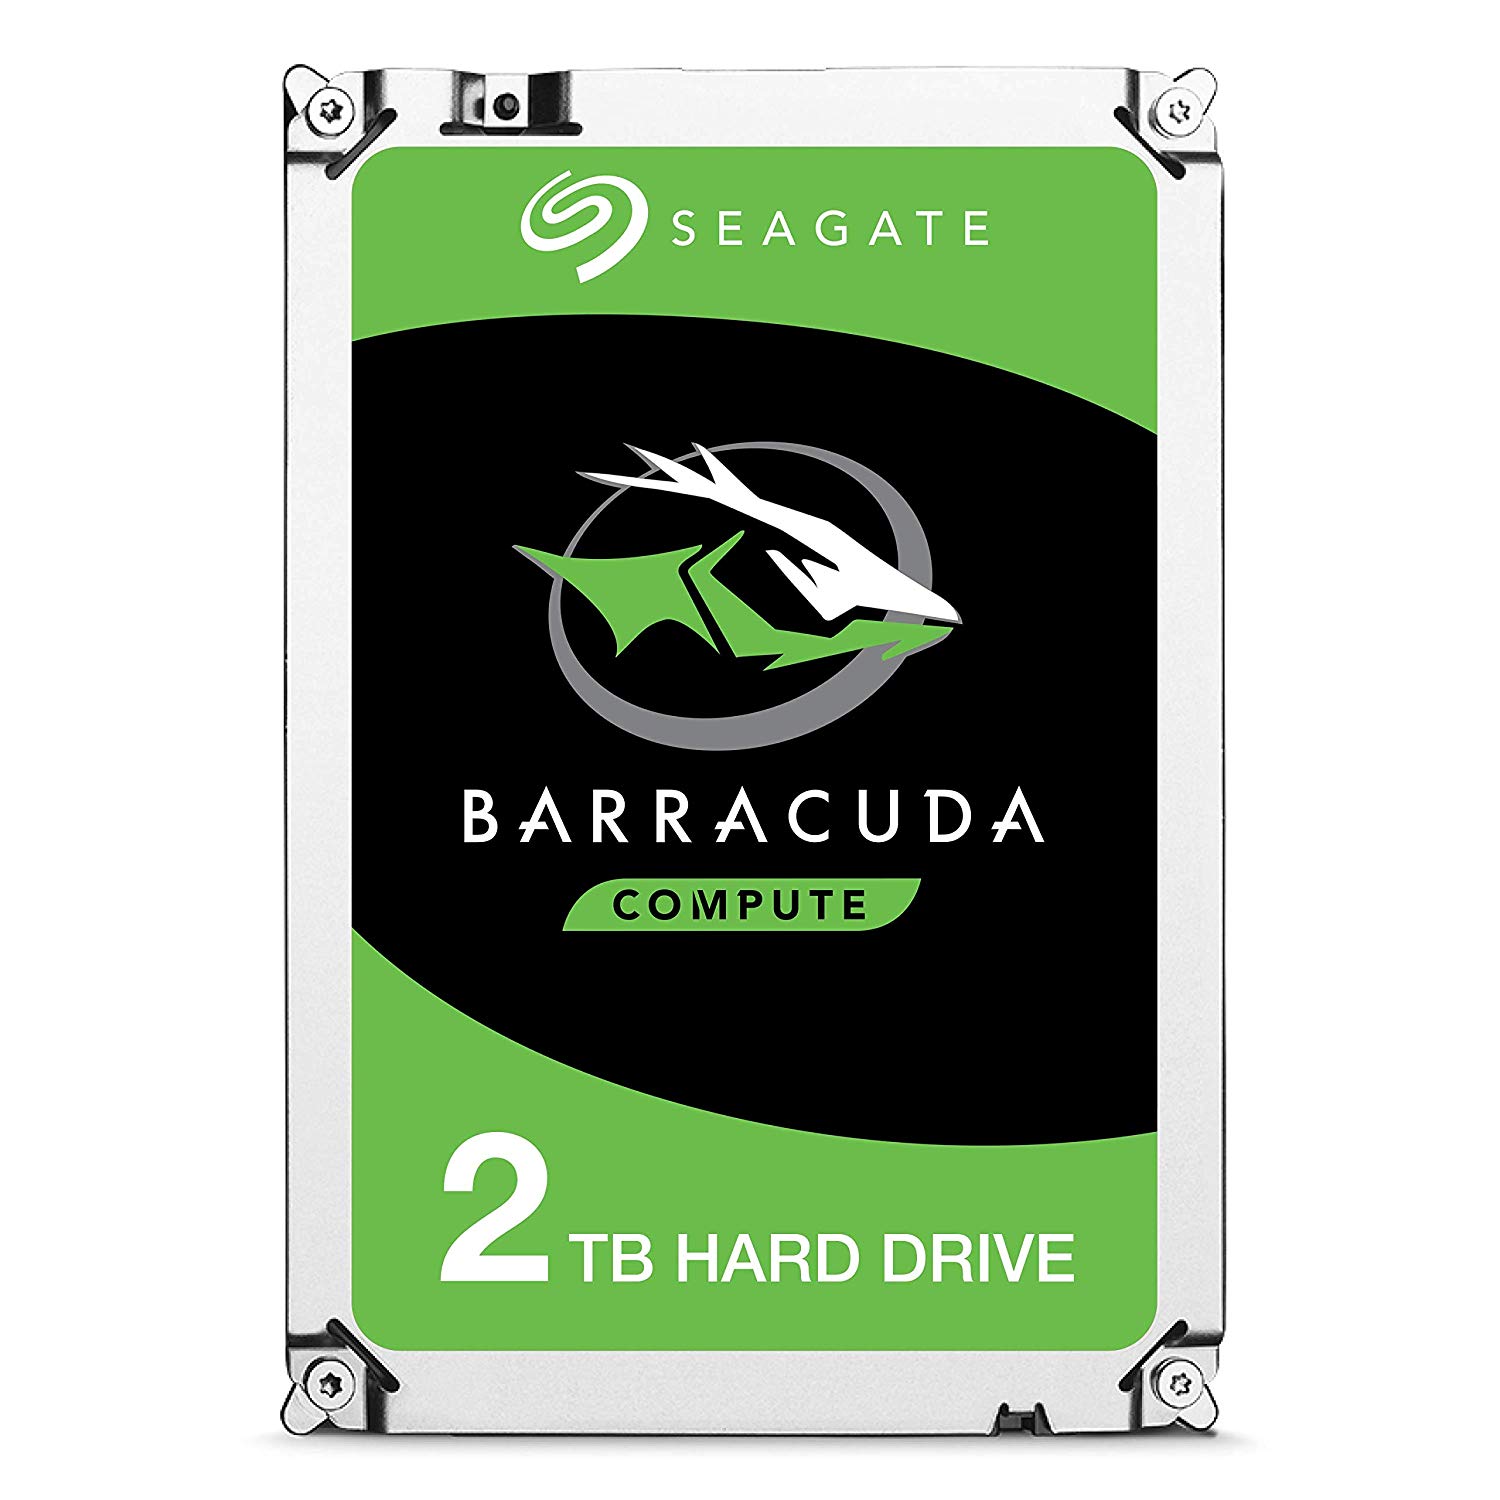 Seagate 5TB Barracuda solo 49,5€